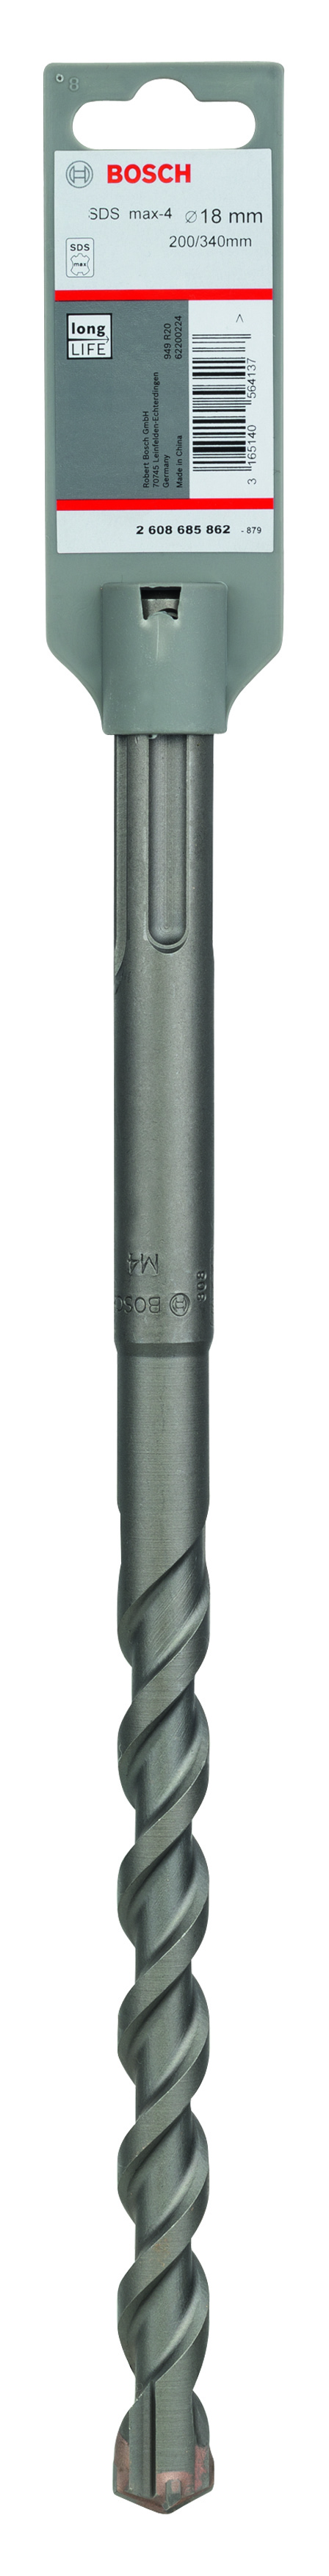 Bosch SDS-Max-4 Hammer Drill Bit 18mm x 200mm x 340mm